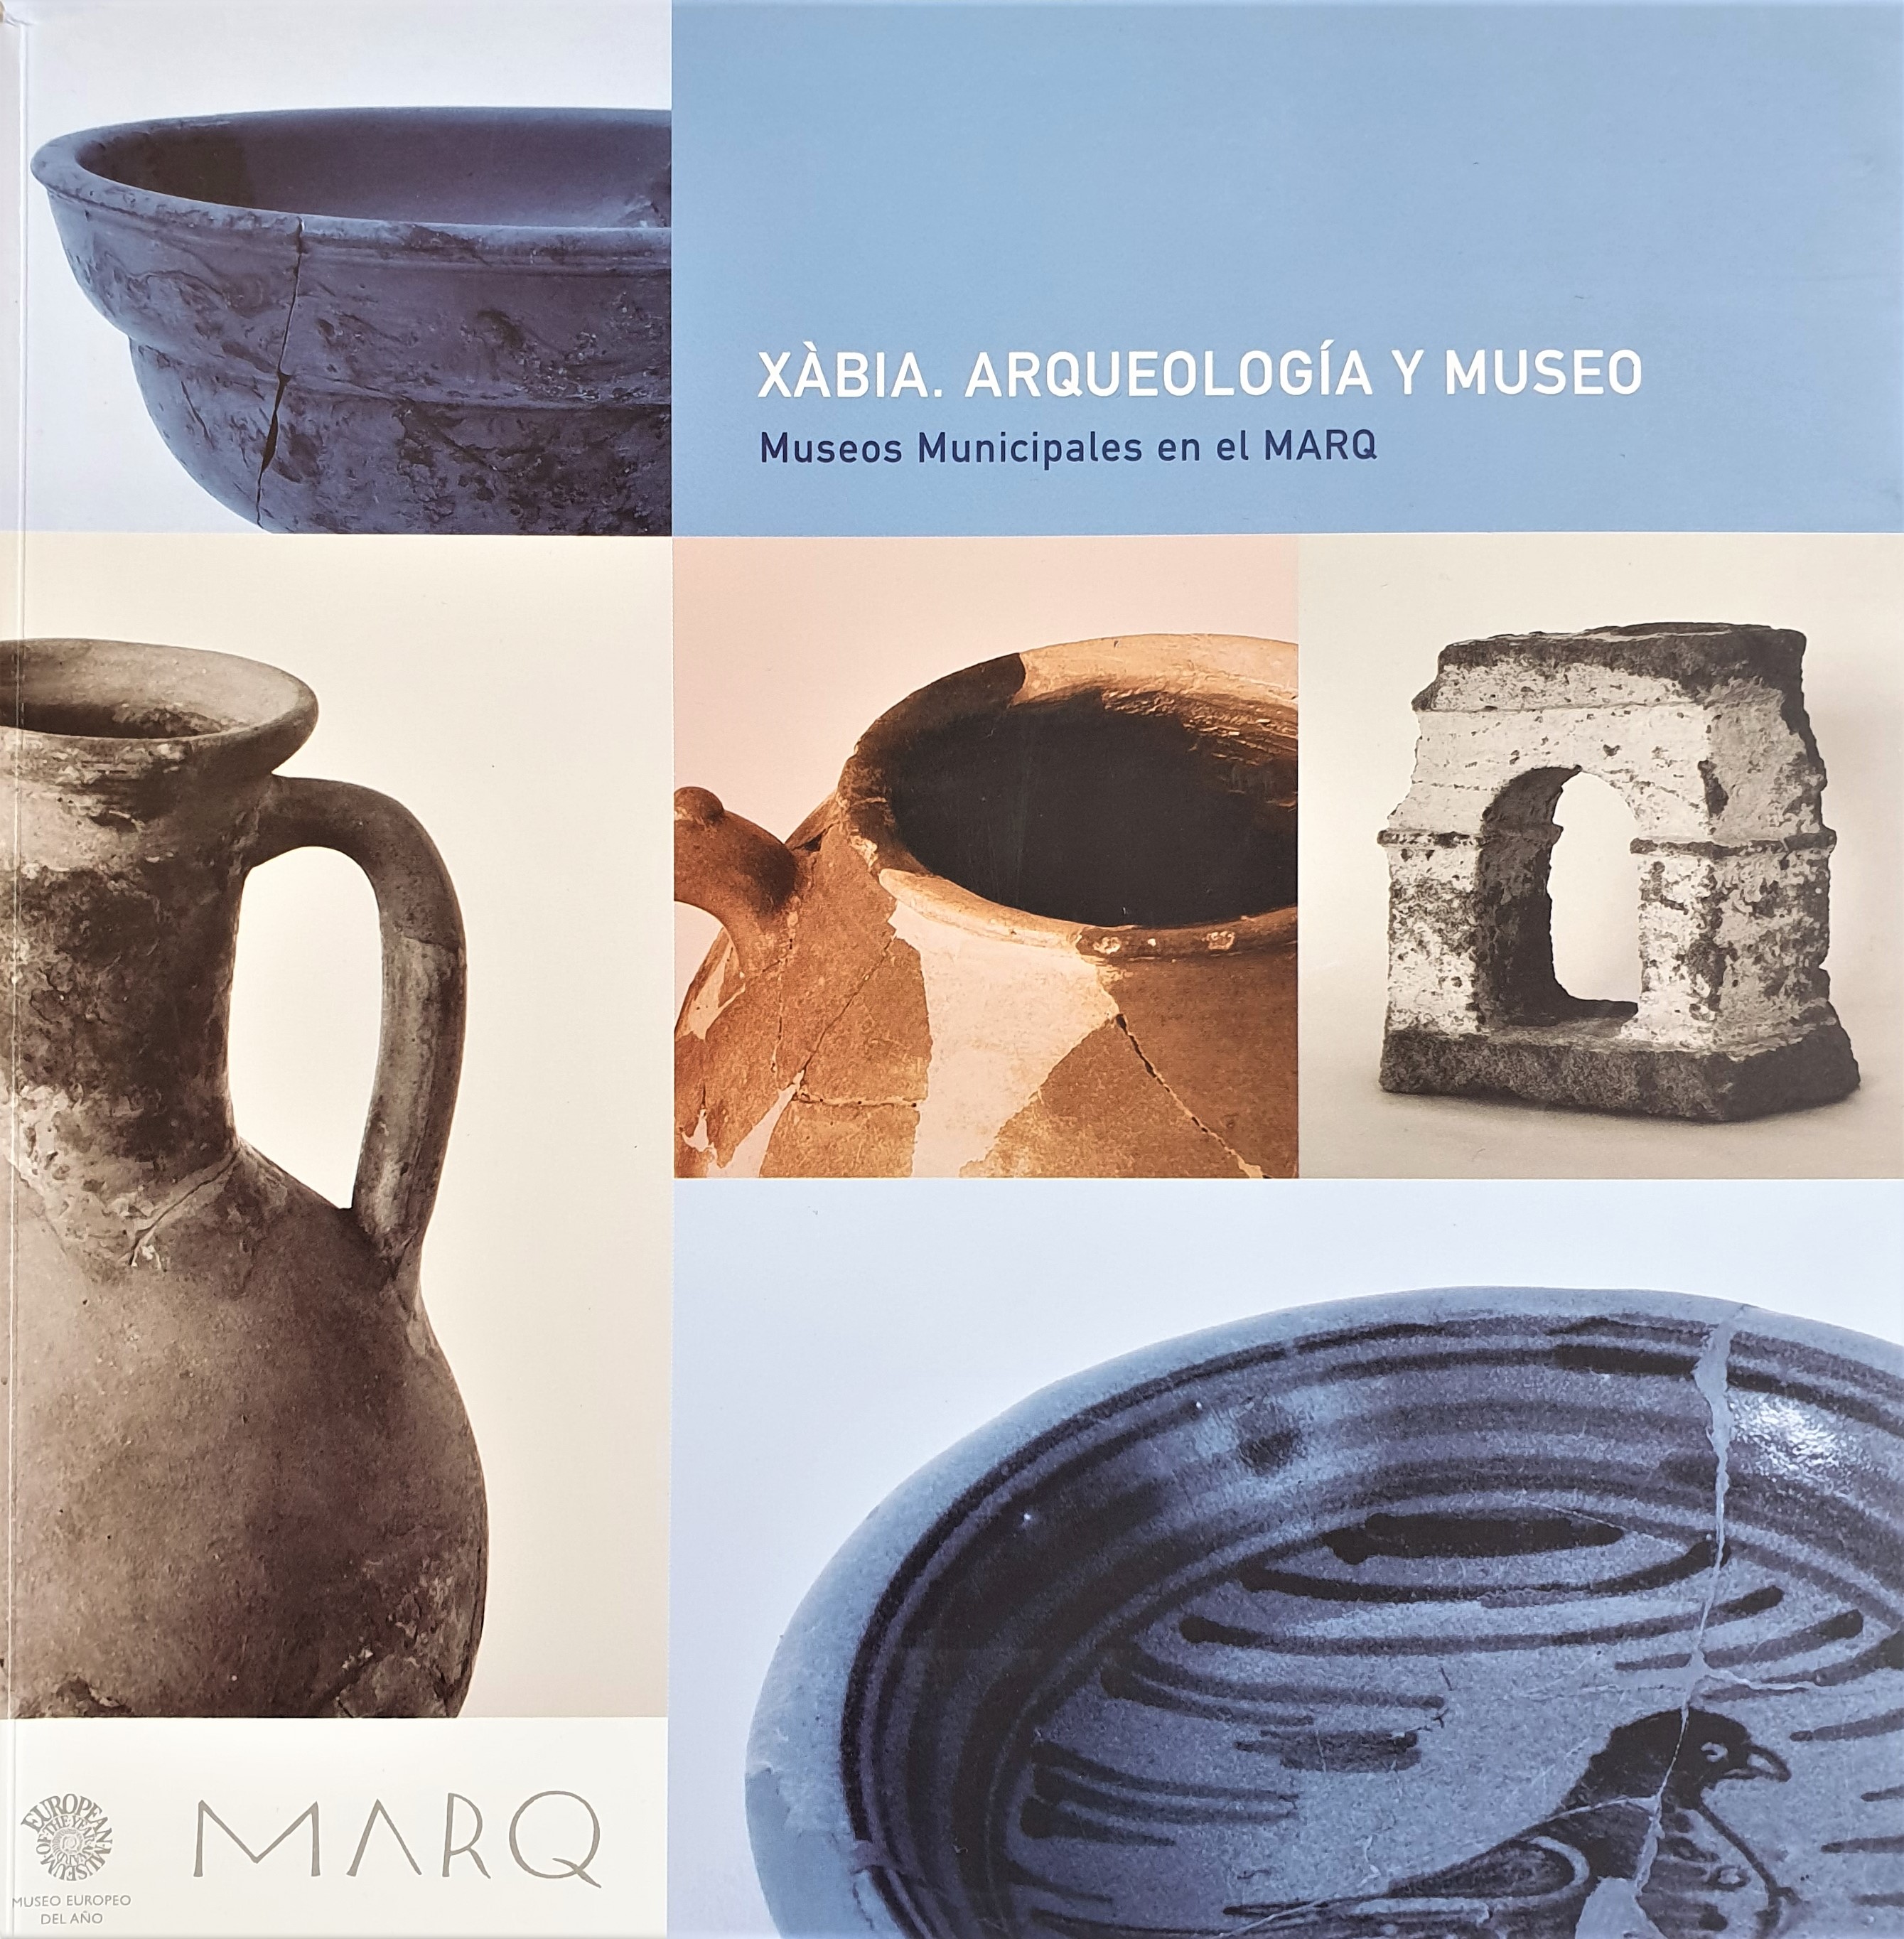 Xàbia. Arqueología y museo. Museos Municipales en el MARQ